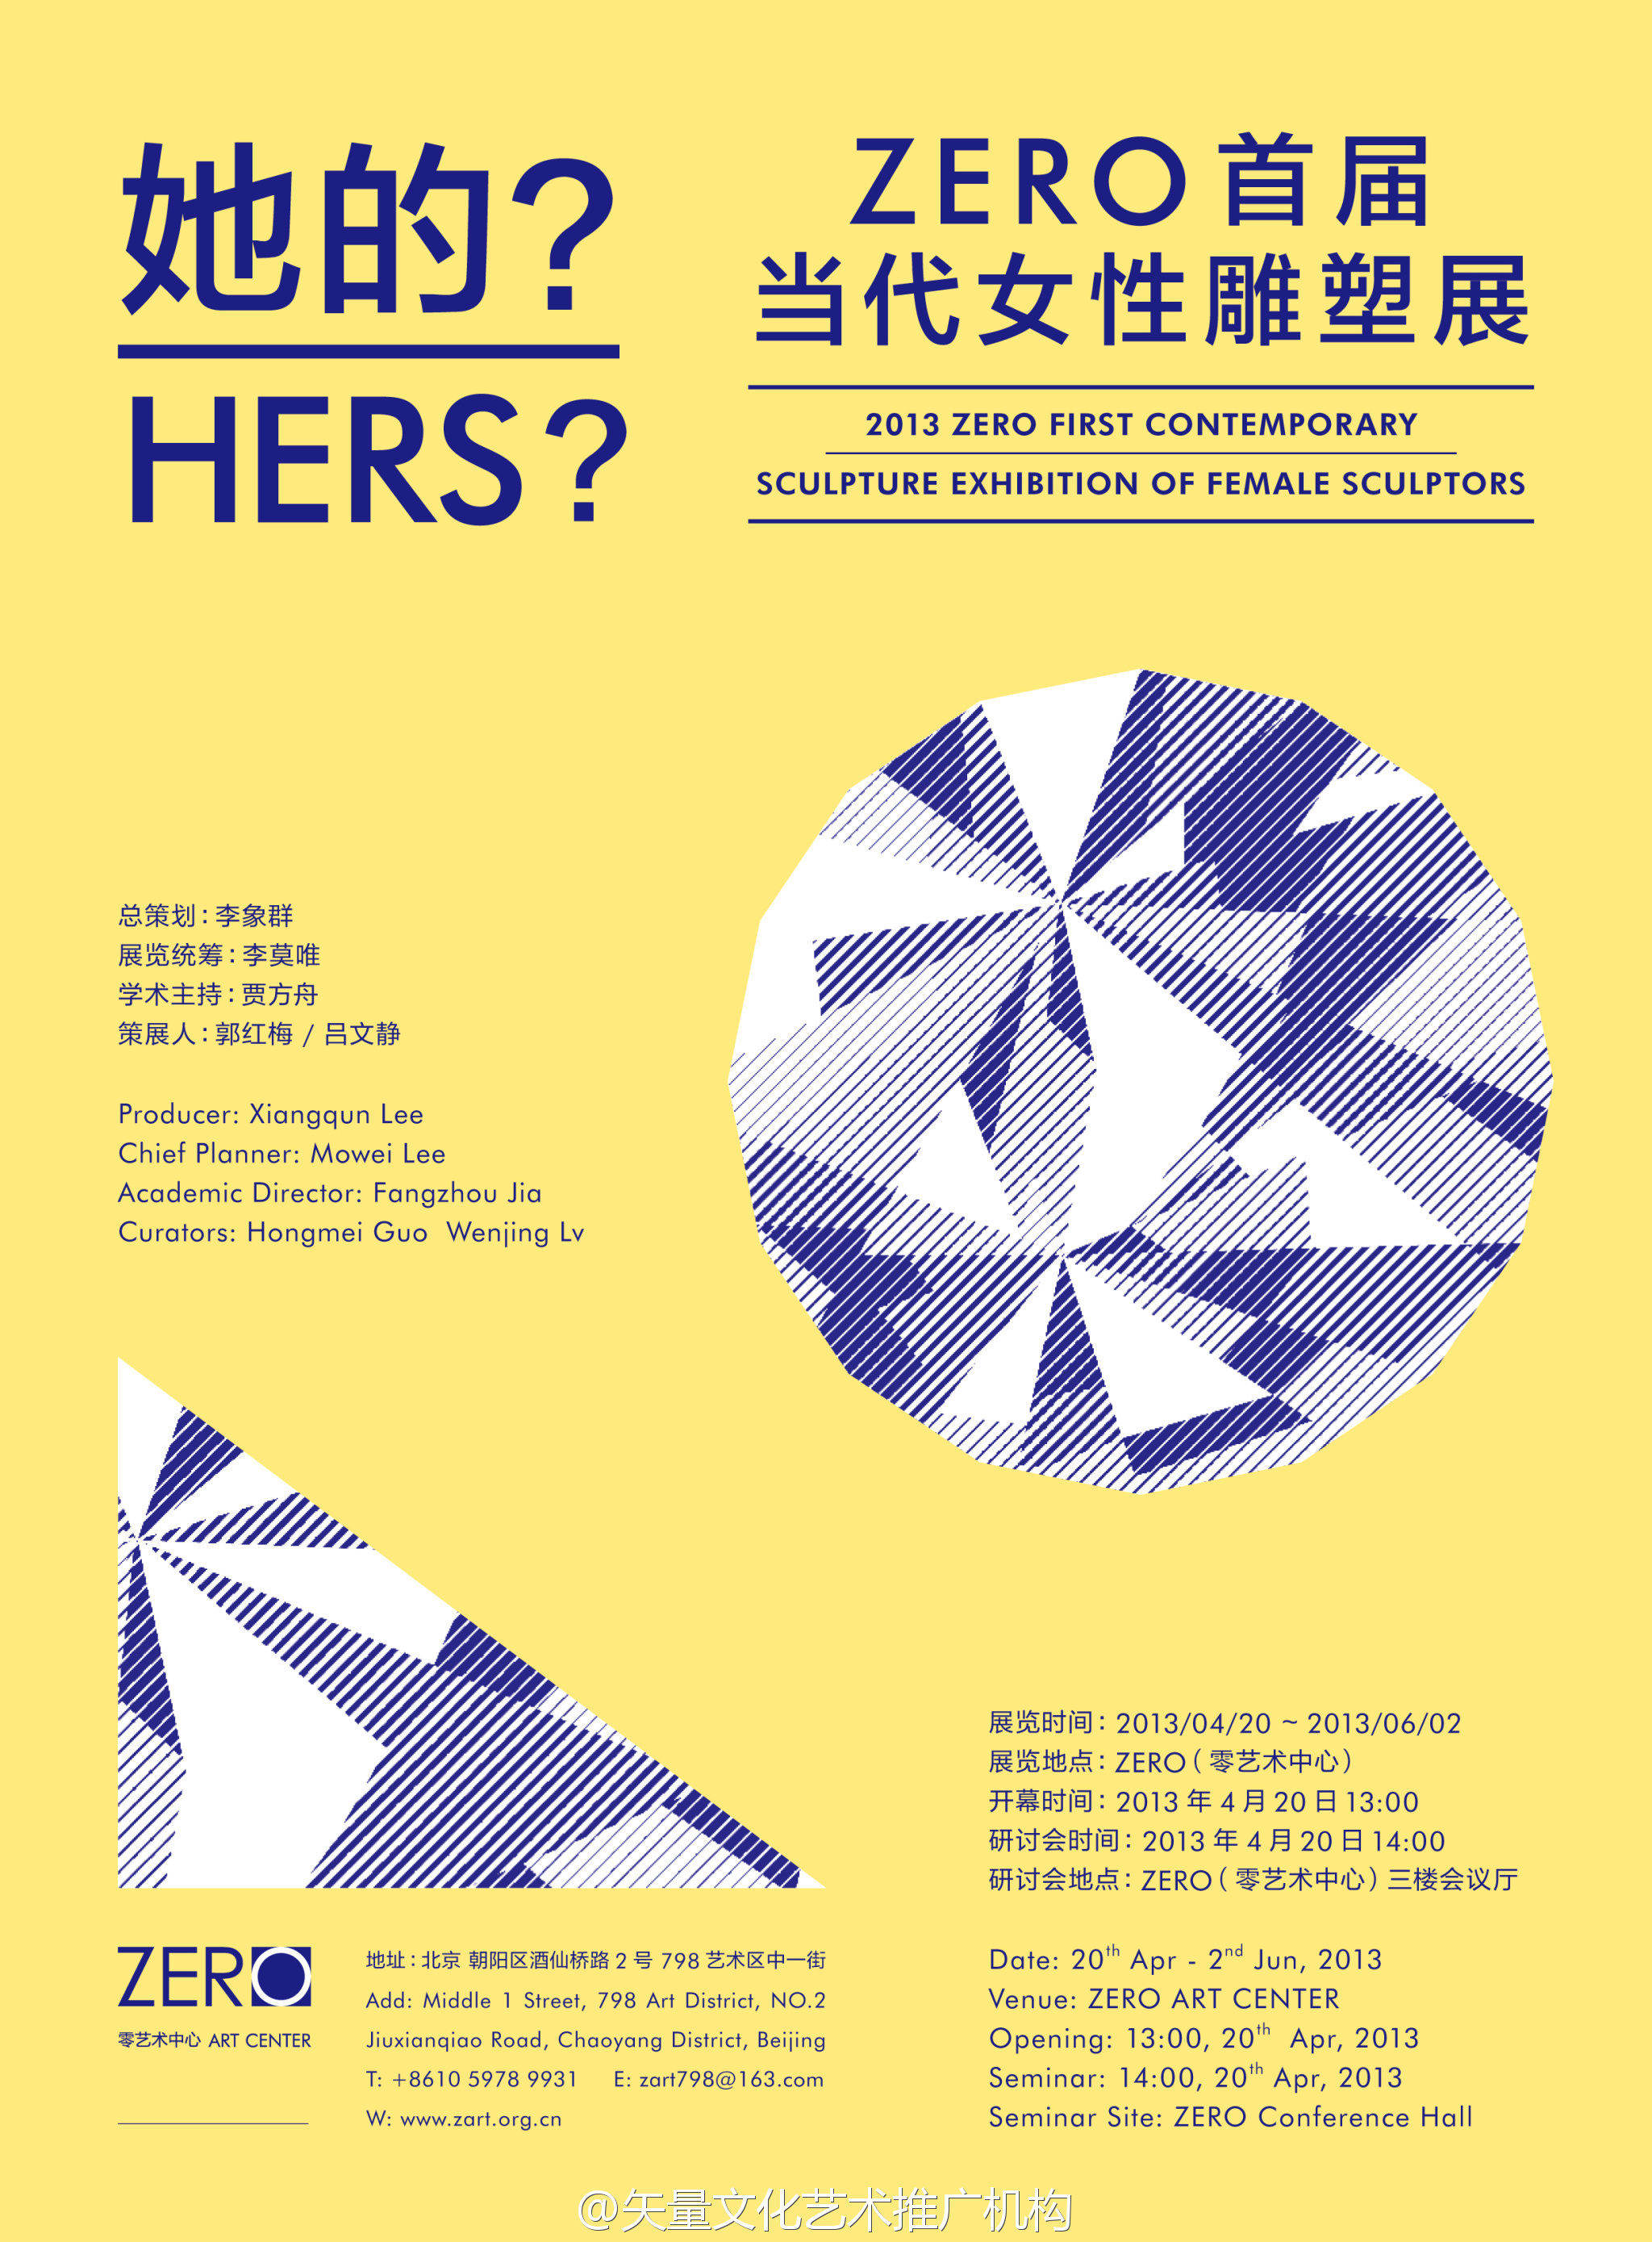 《她的?--ZERO首届当代女性雕塑展》20日开幕